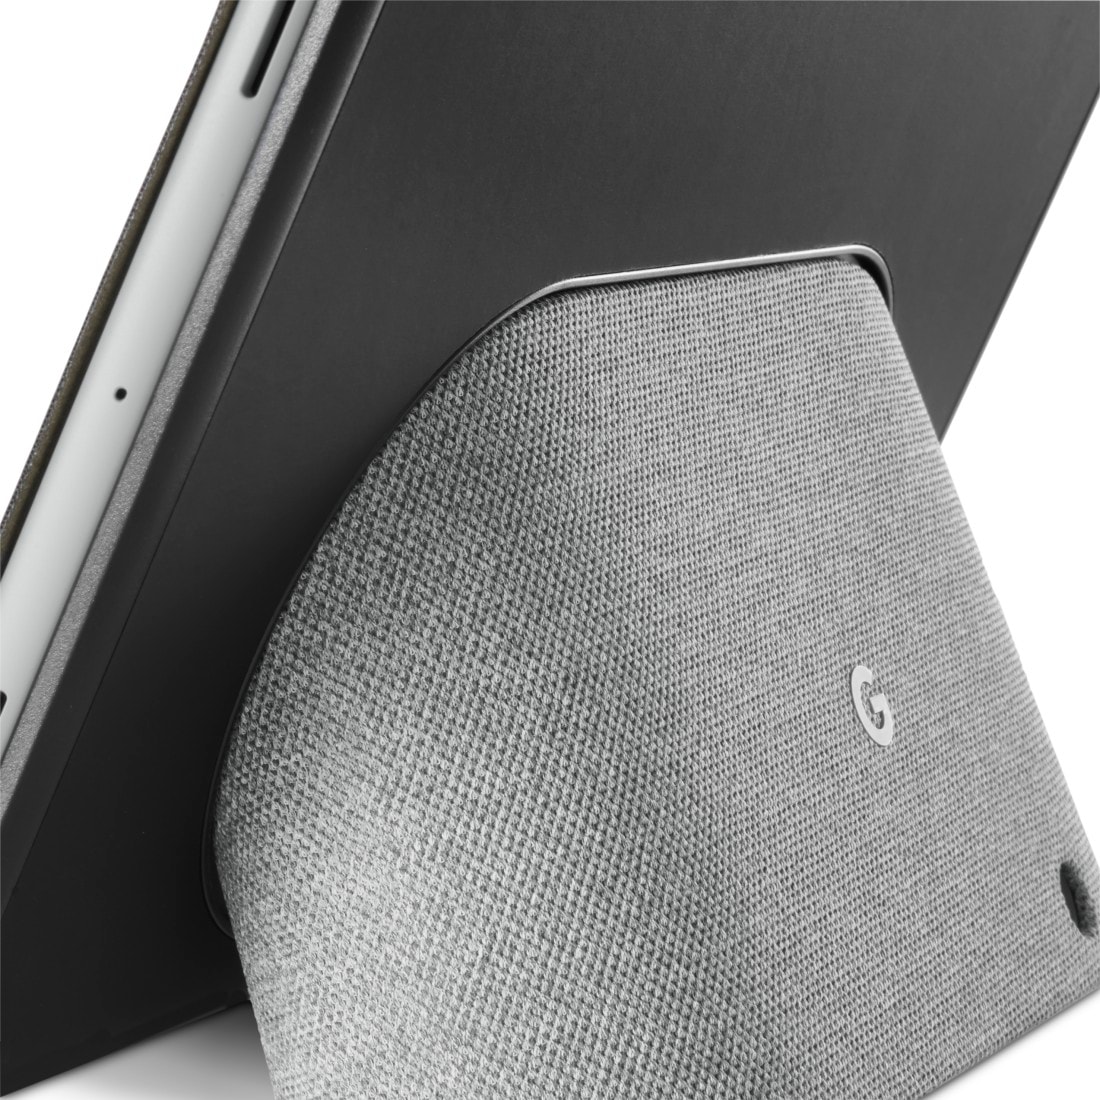 Hama Tablet-Hülle »Tablet Case für das Google Pixel Tablet, Farbe Schwarz«, 27,9 cm (11 Zoll), Mit Standfunktion und integriertem Fach für kabelloses Laden